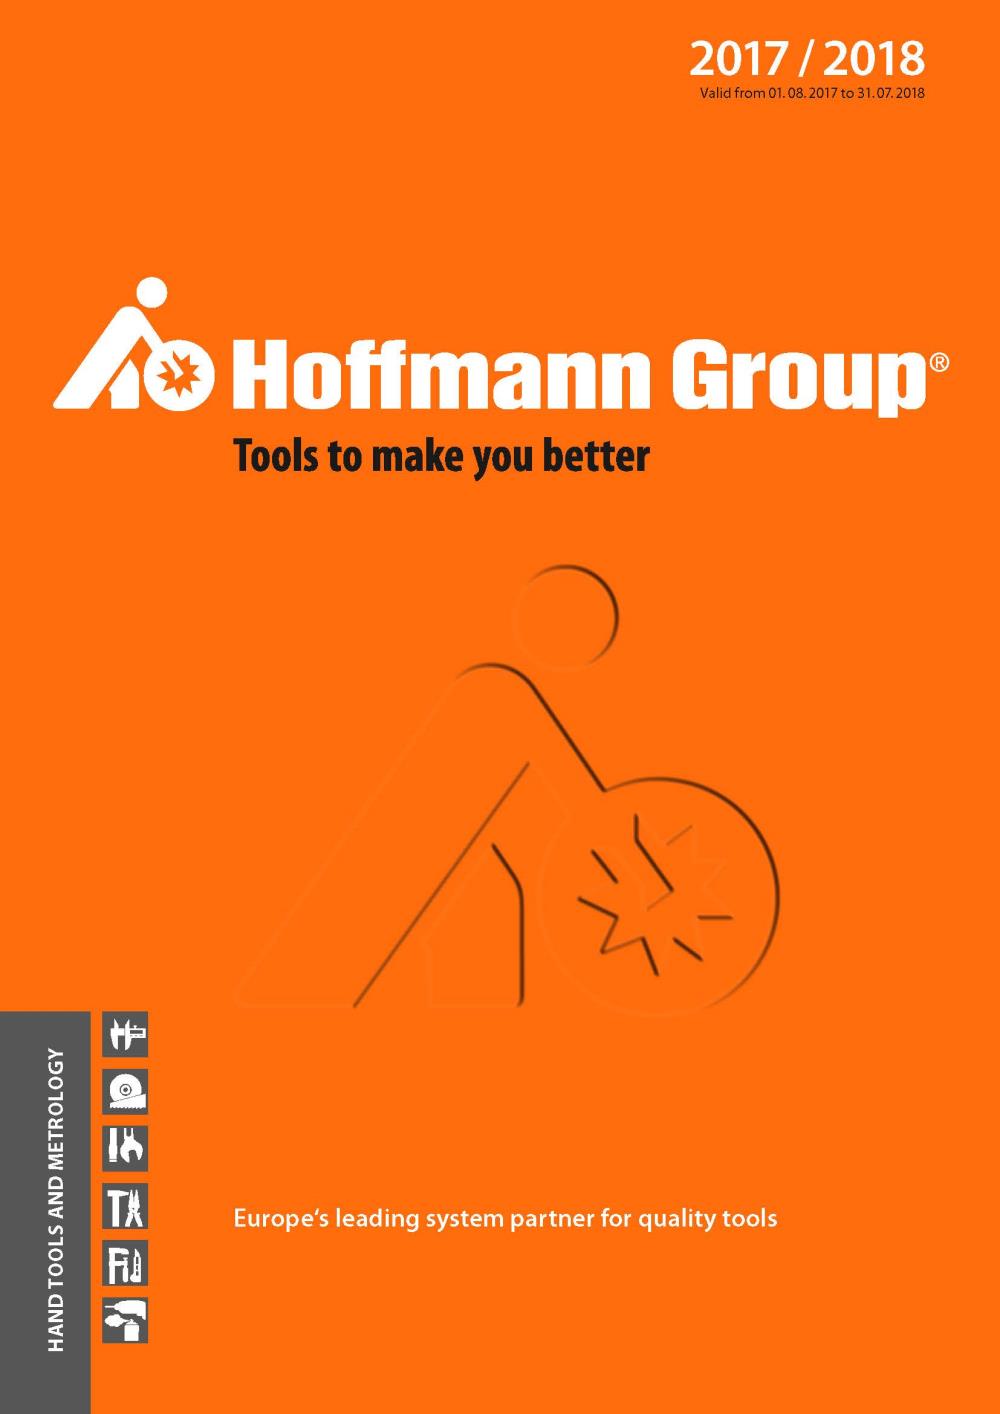 ็็Hoffmann Group